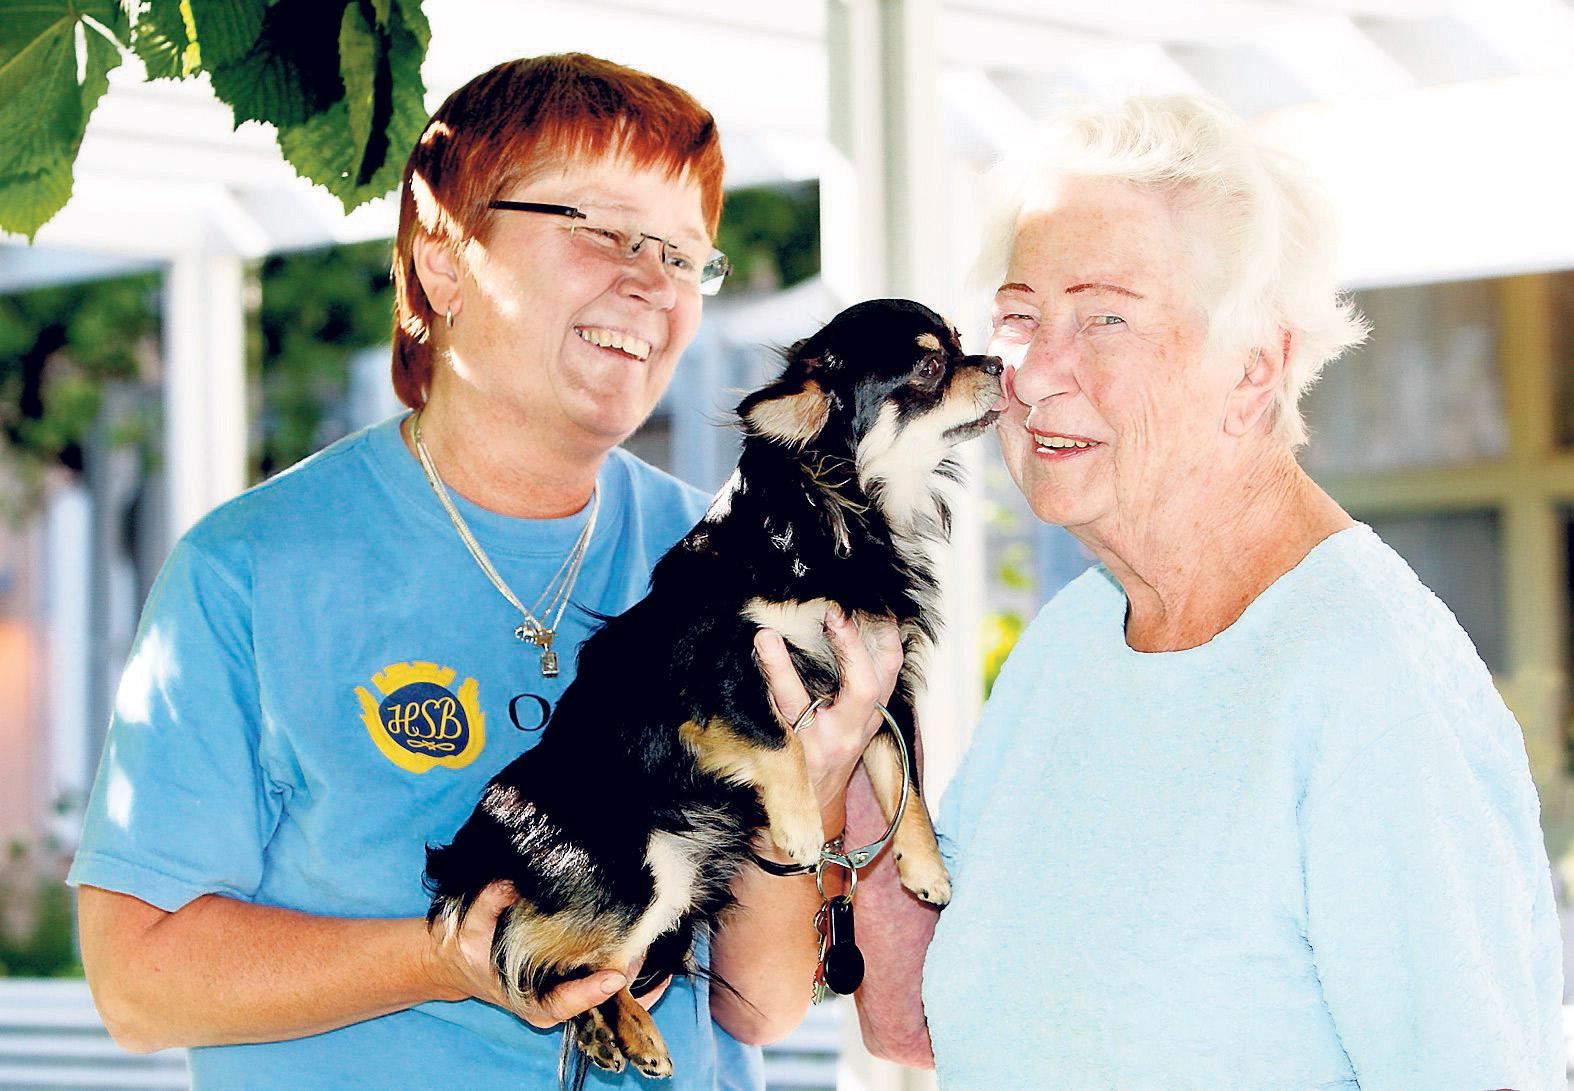 Lyckad jycke ”Mina chefer vill ha in djur i verksam­heten”, säger Sussi Björklund. Här står hon med Ingrid Sigfridsson och hunden Julle.